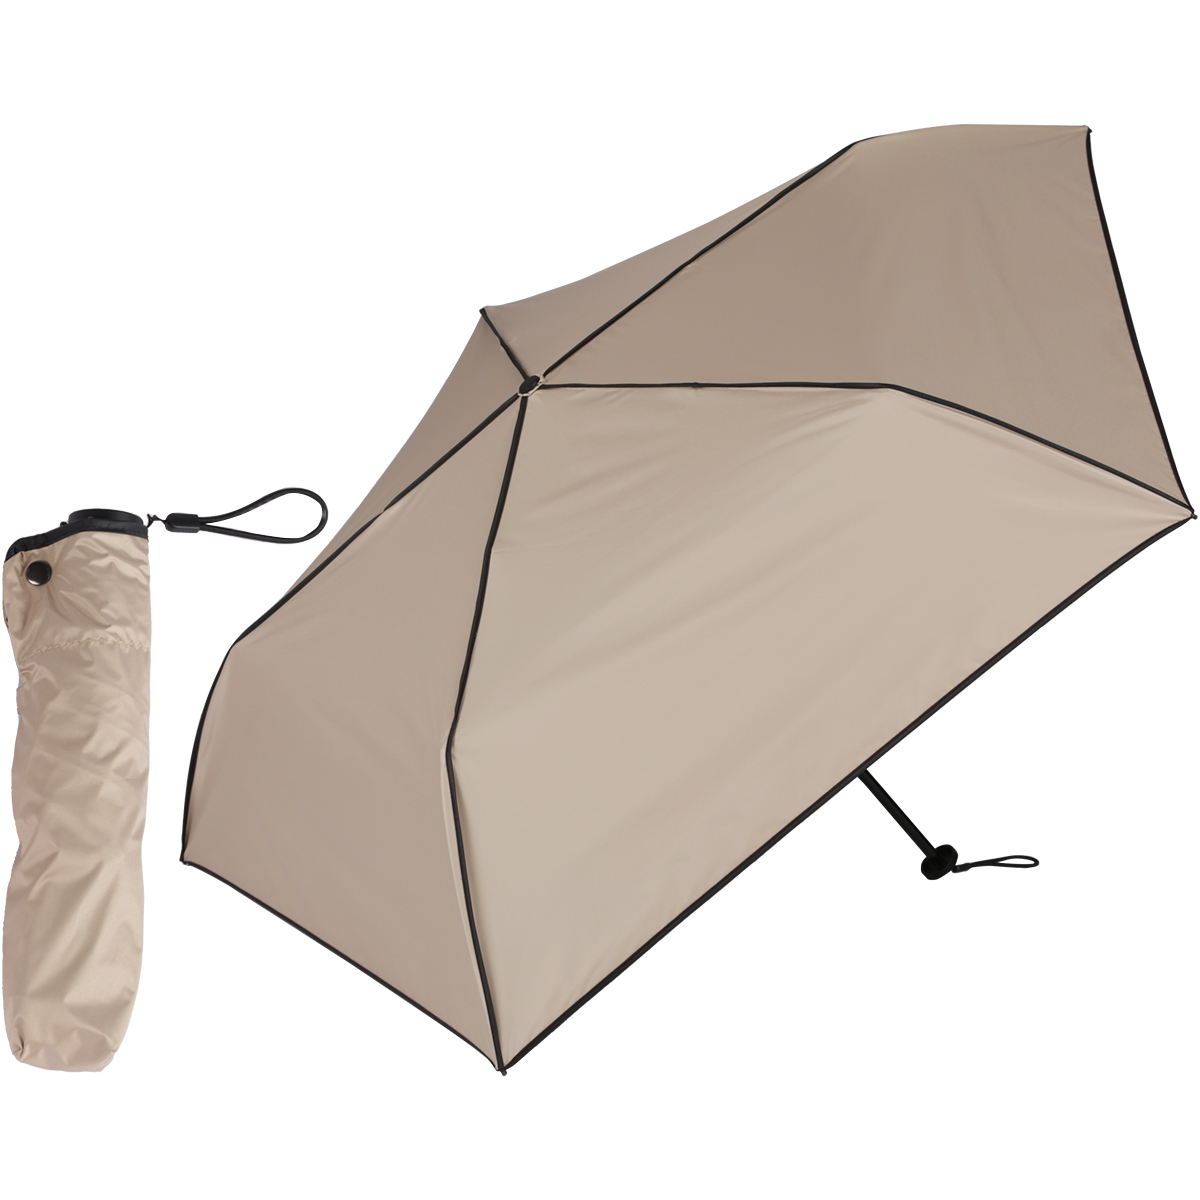 日傘 完全遮光 折りたたみ 超軽量カーボン傘 120g 折り畳み傘 熱中症対策 コンパクト おしゃれ...